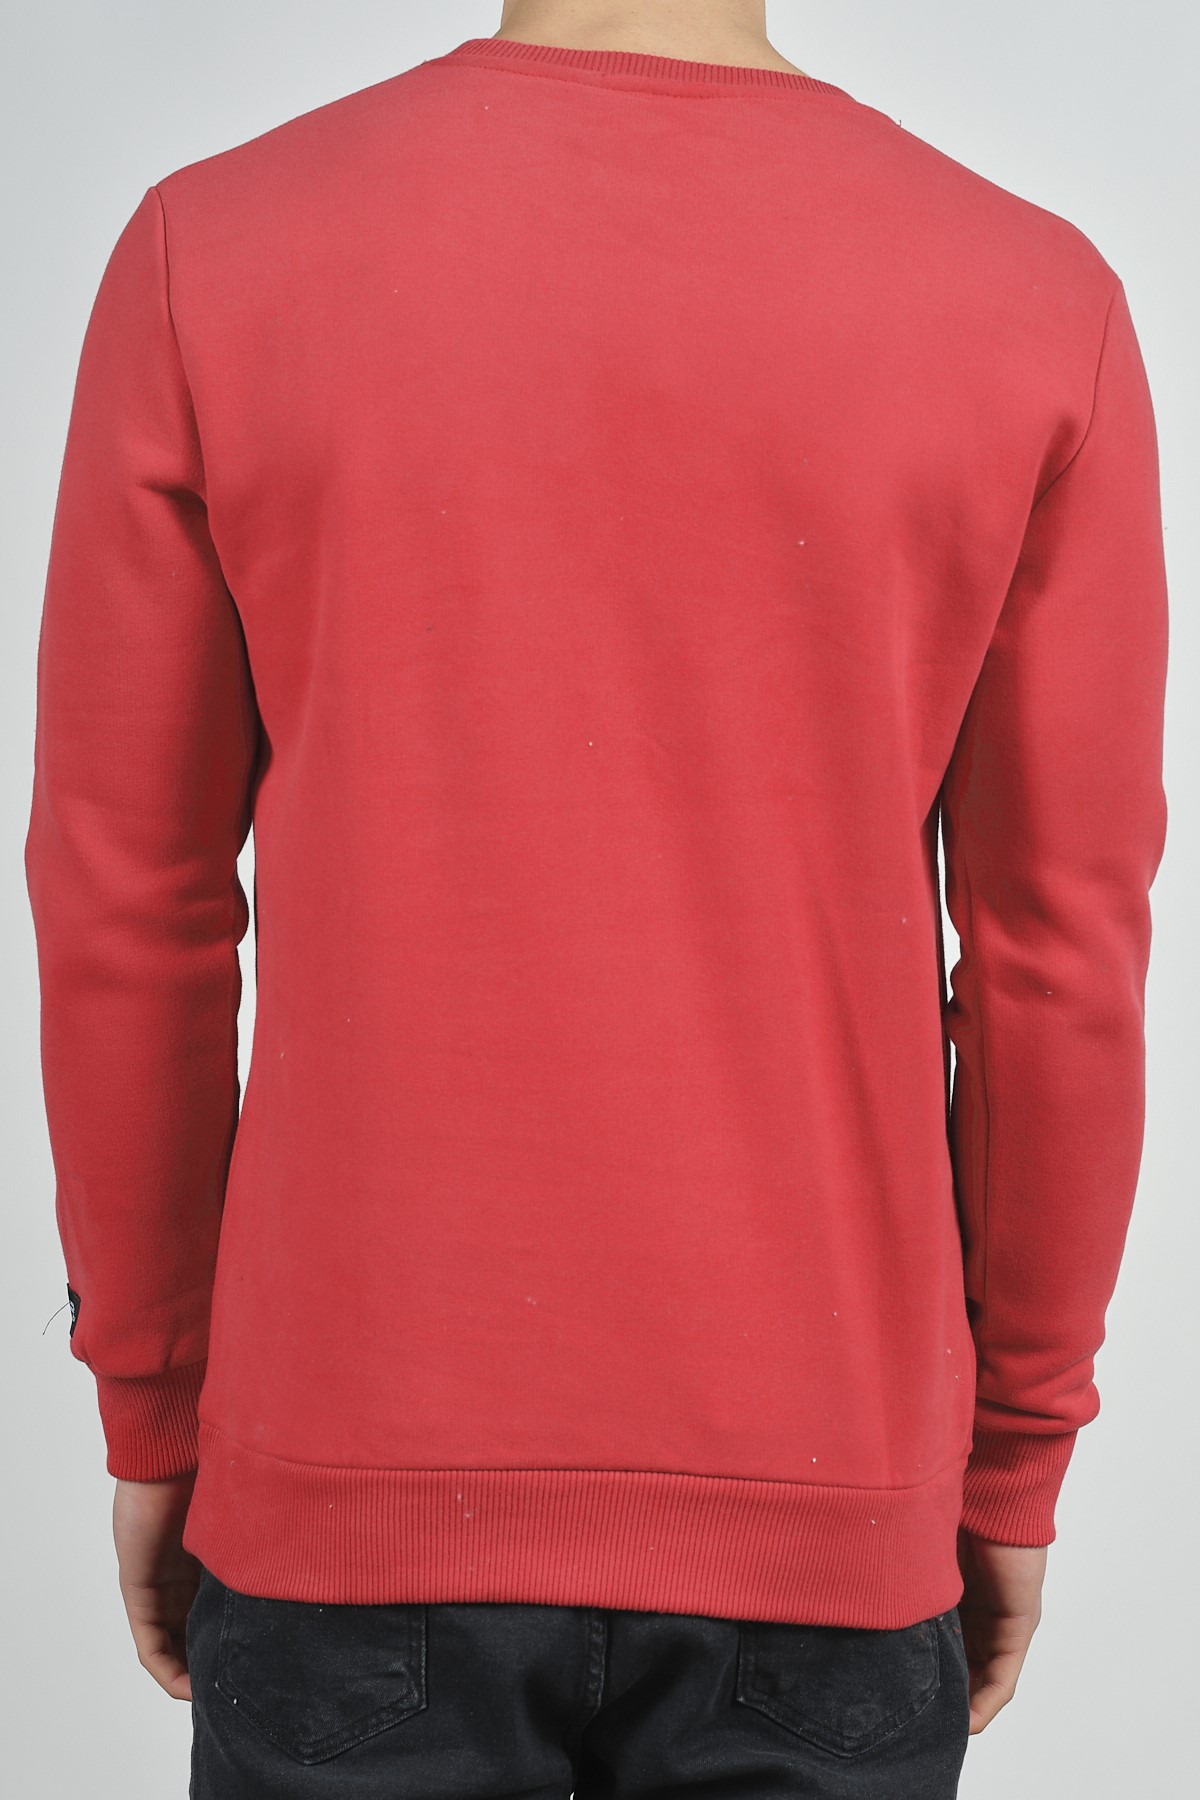 Kırmızı Baskılı Sweatshirt 1KXE8-44268-04 - 3